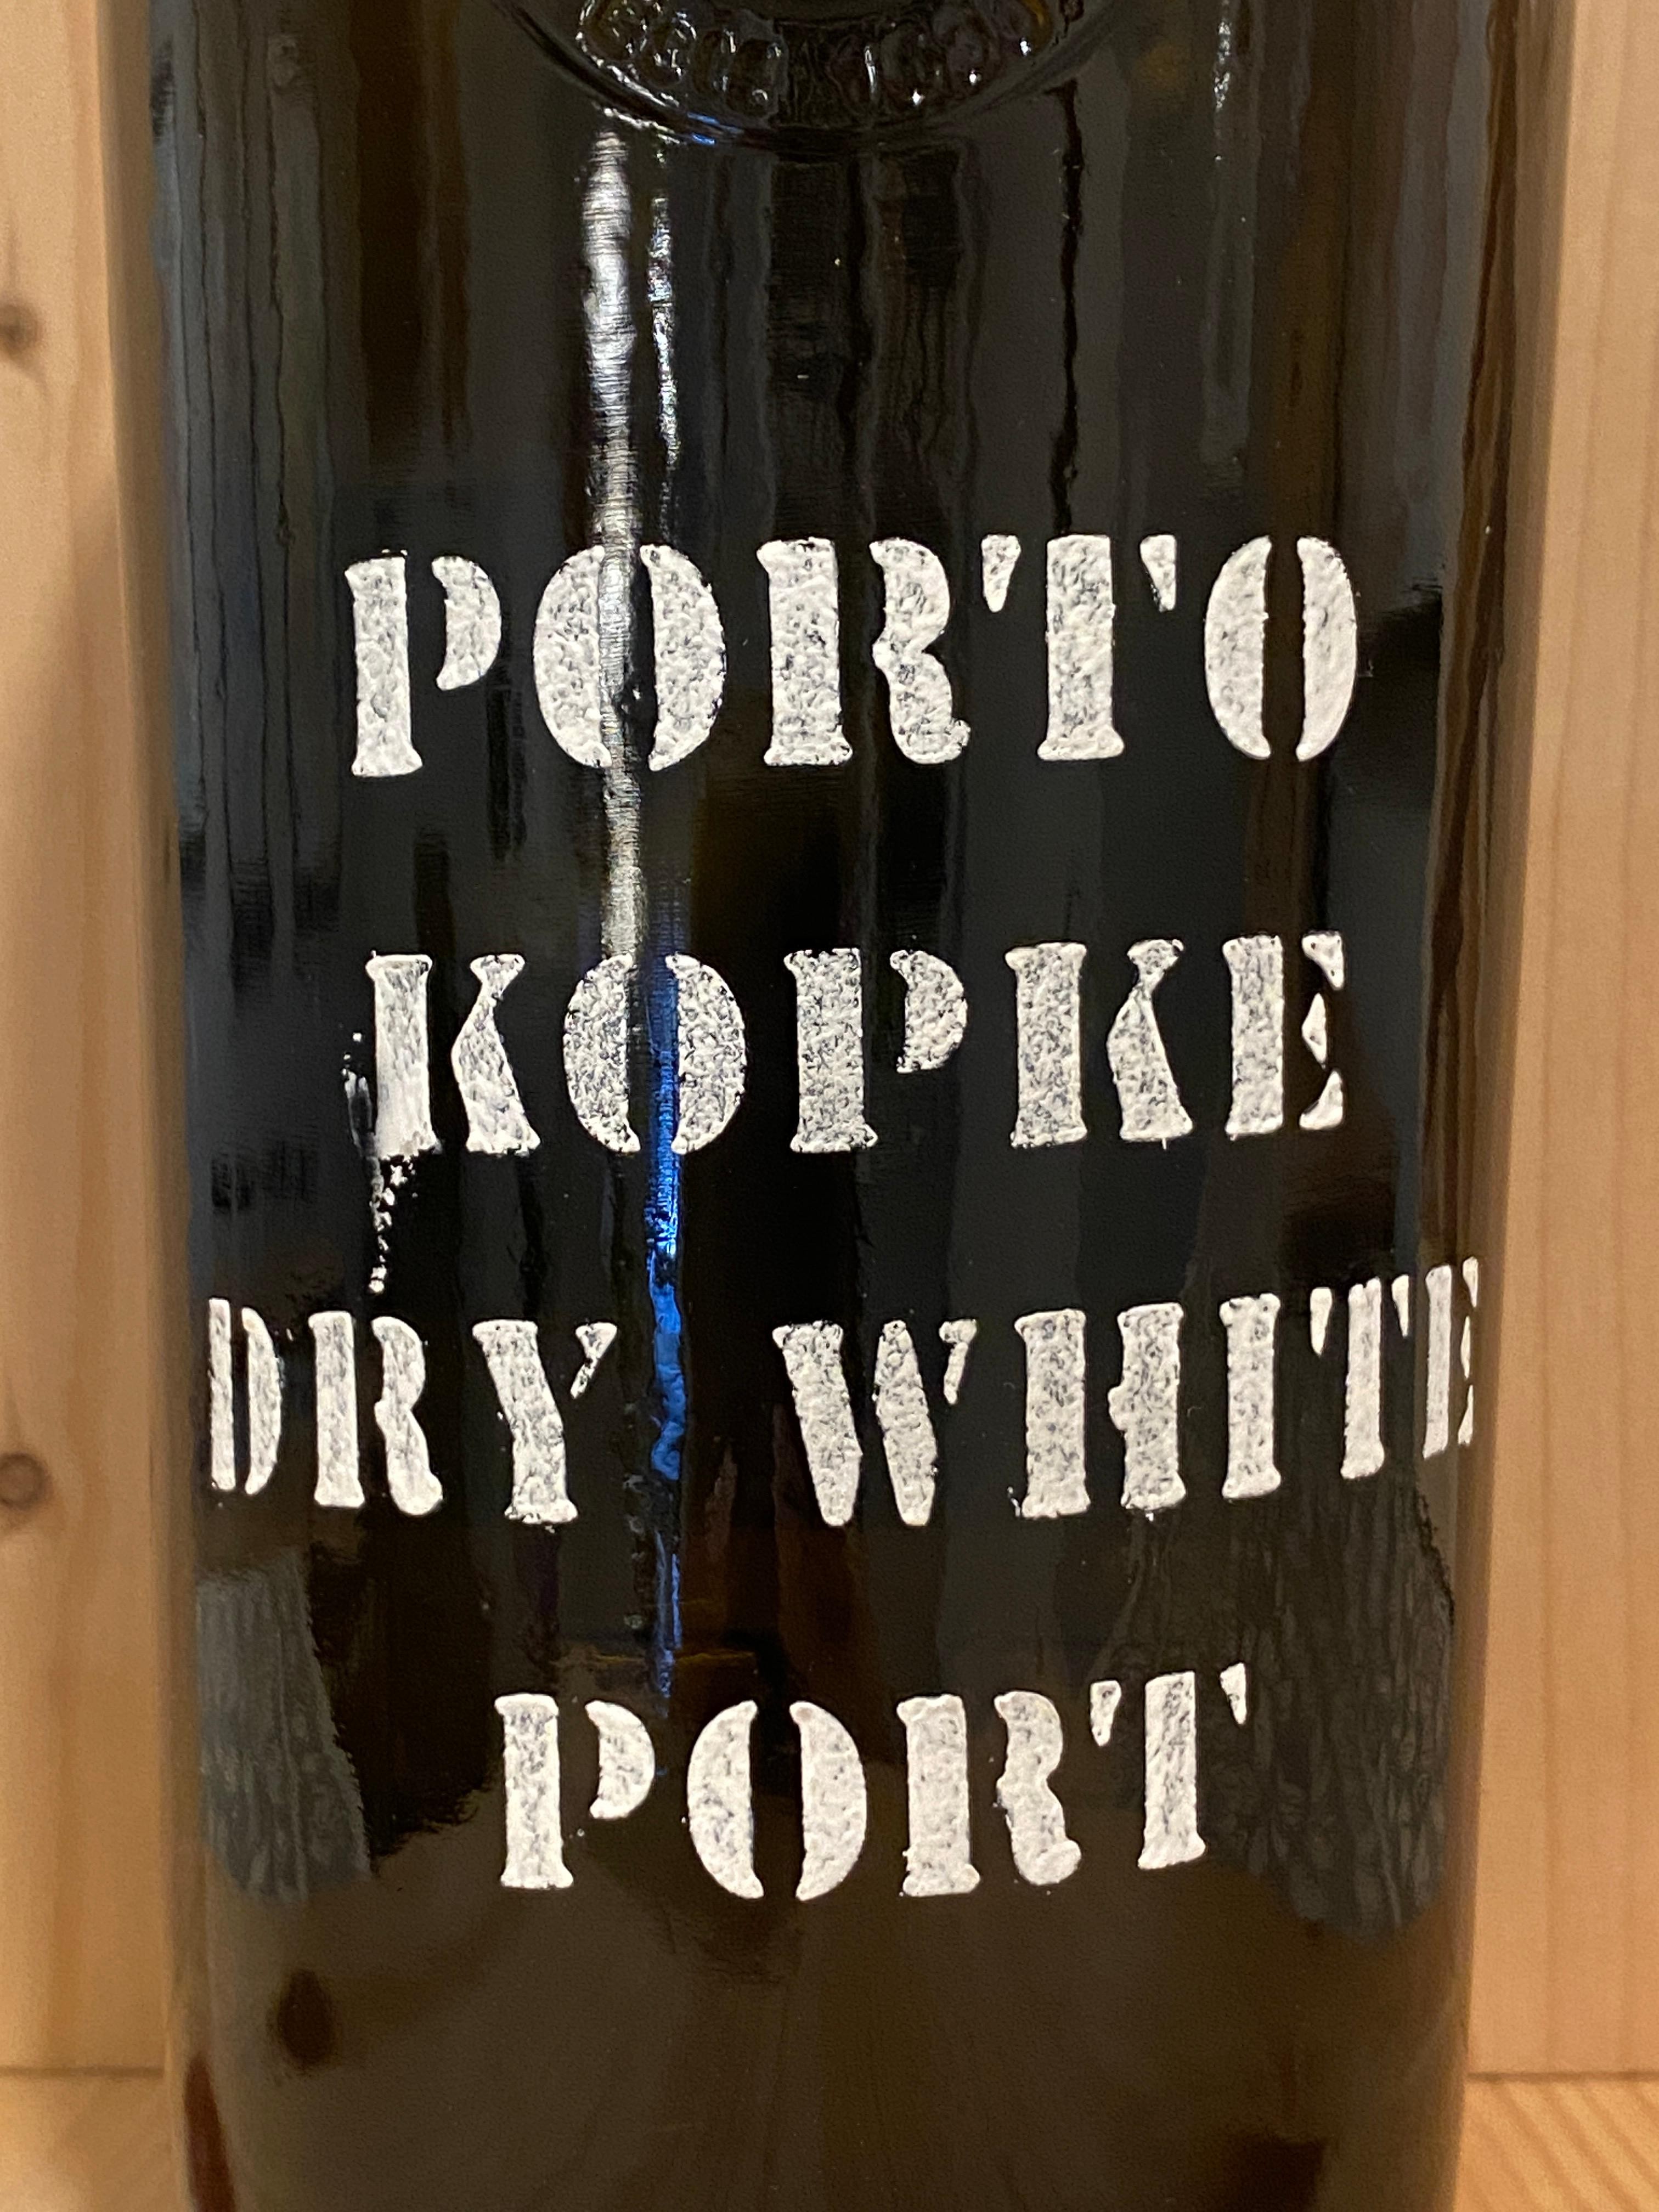 Kopke Dry White Port NV: Port, Portugal